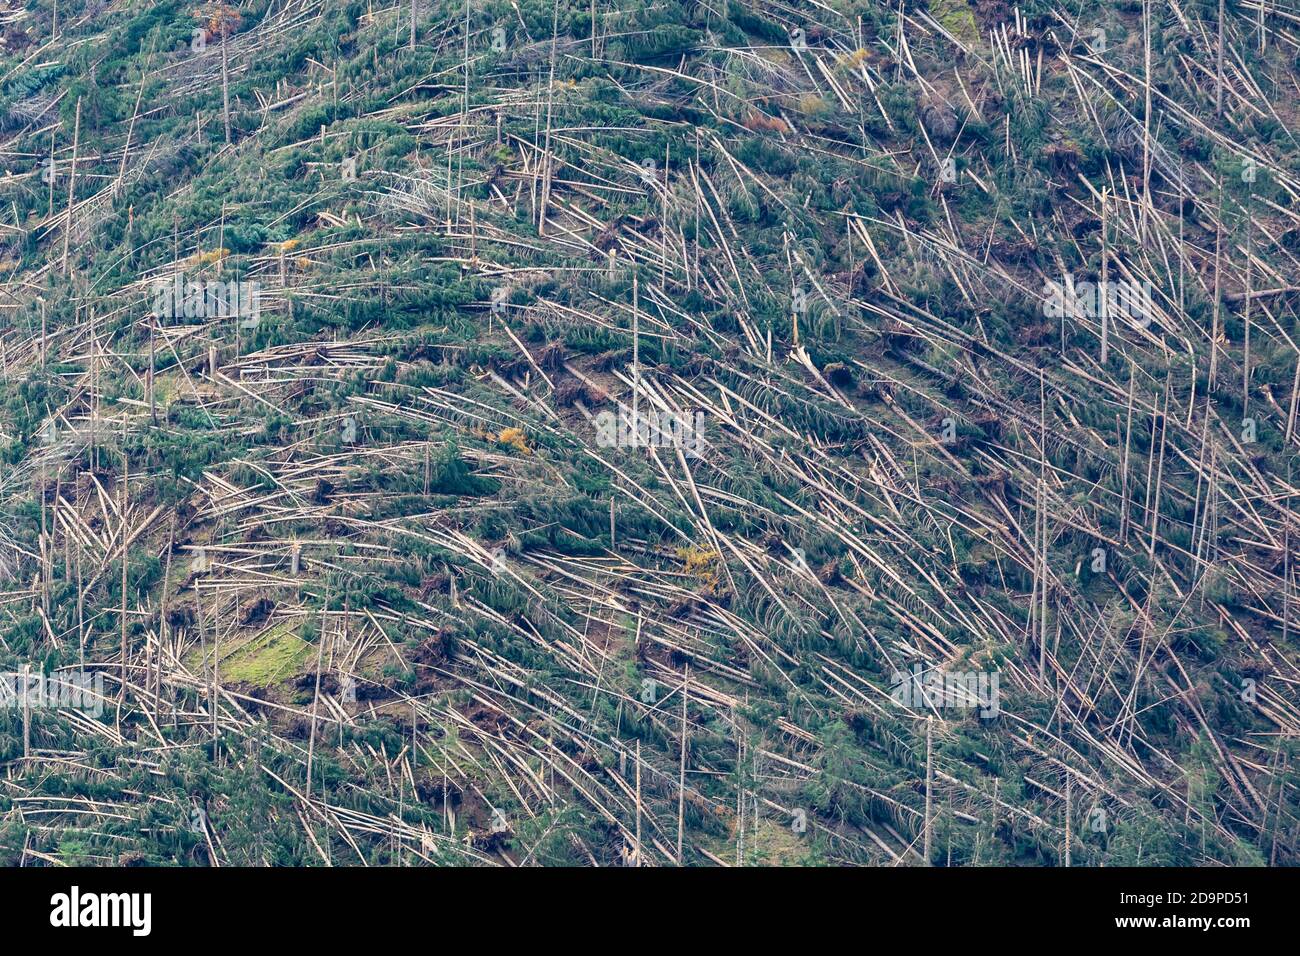 Crashed alberi e foreste liberate dopo il passaggio della tempesta Vaia sulle Dolomiti, autunno 2018, Belluno, Veneto, Italia, Europa Foto Stock